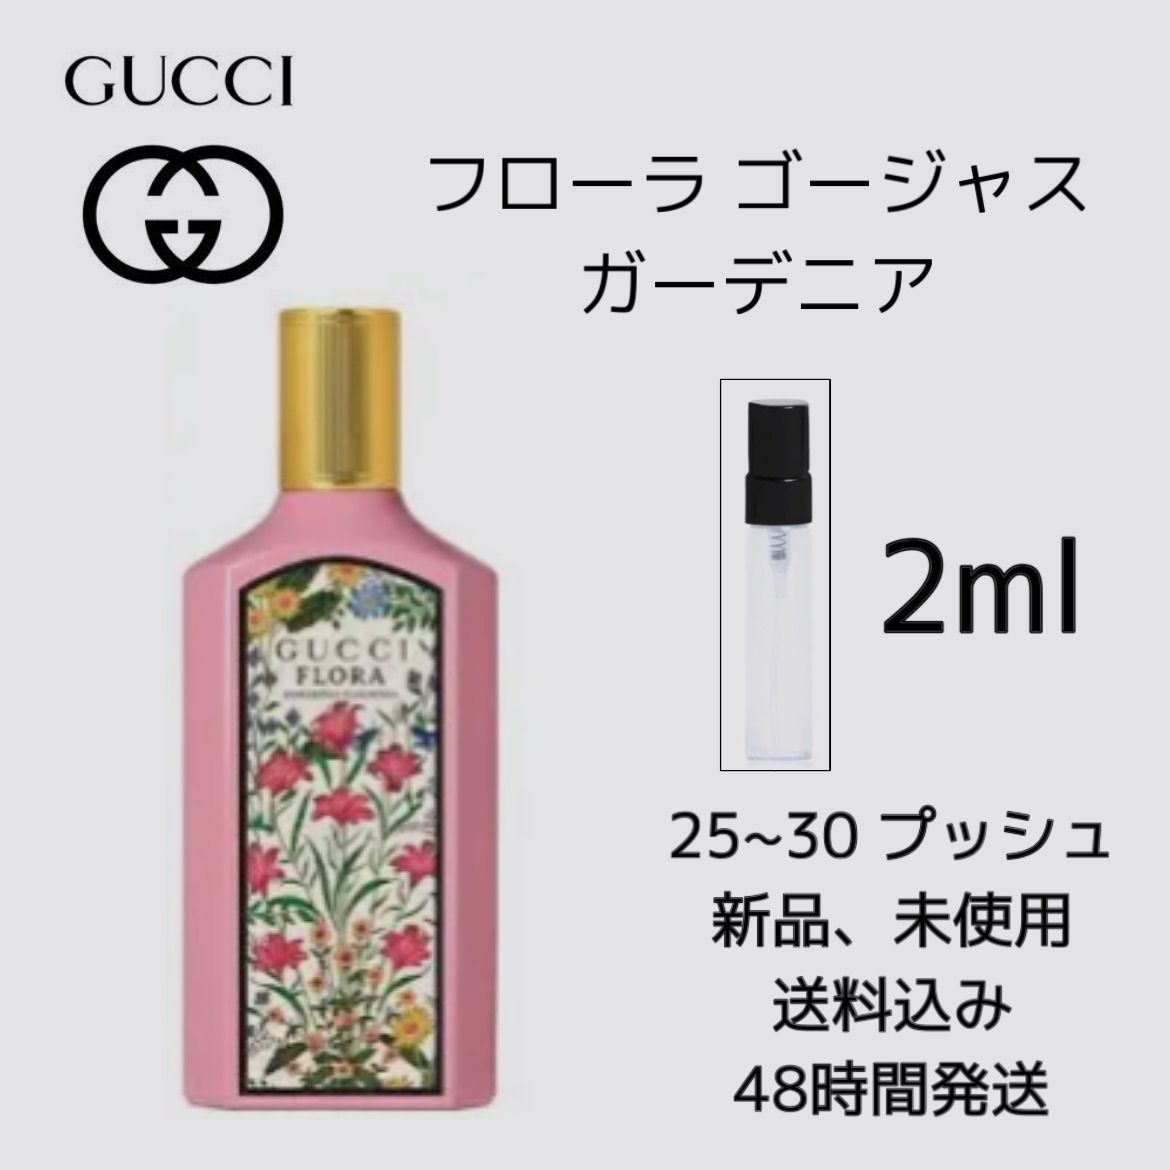 GUCCI グッチ フローラ ゴージャスガーデニア2ml×2セット - 香水(女性用)